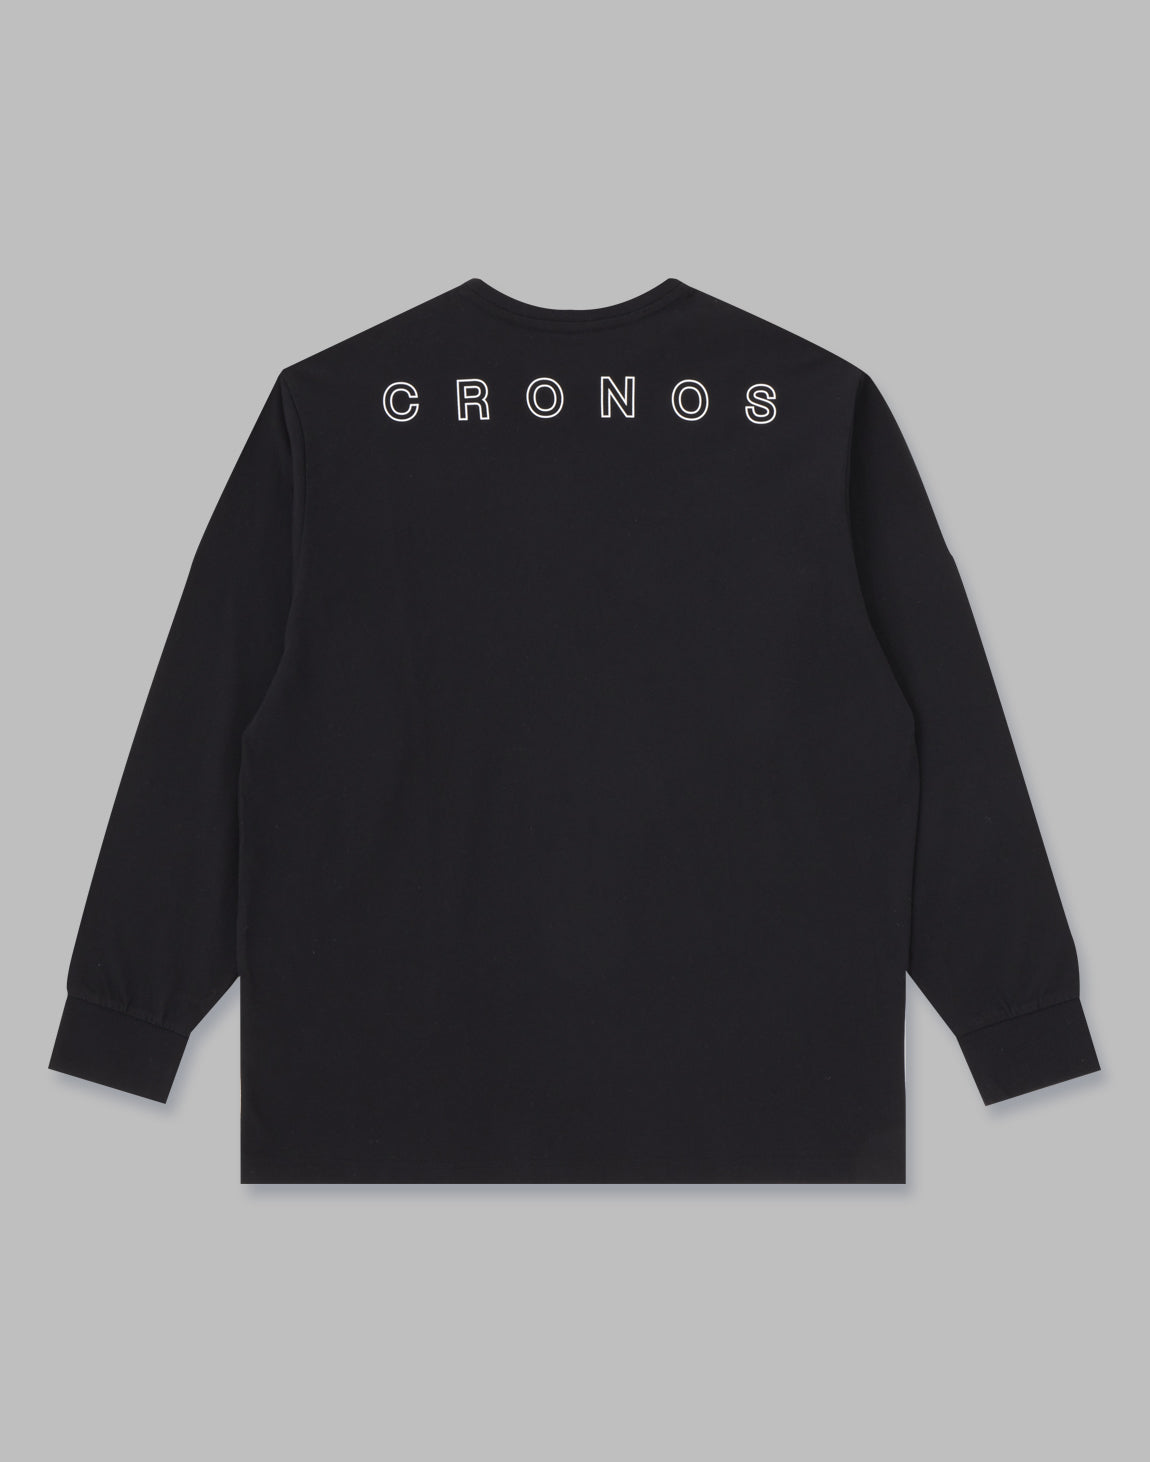 Tシャツ/カットソー(七分/長袖)cronosロングtシャツ